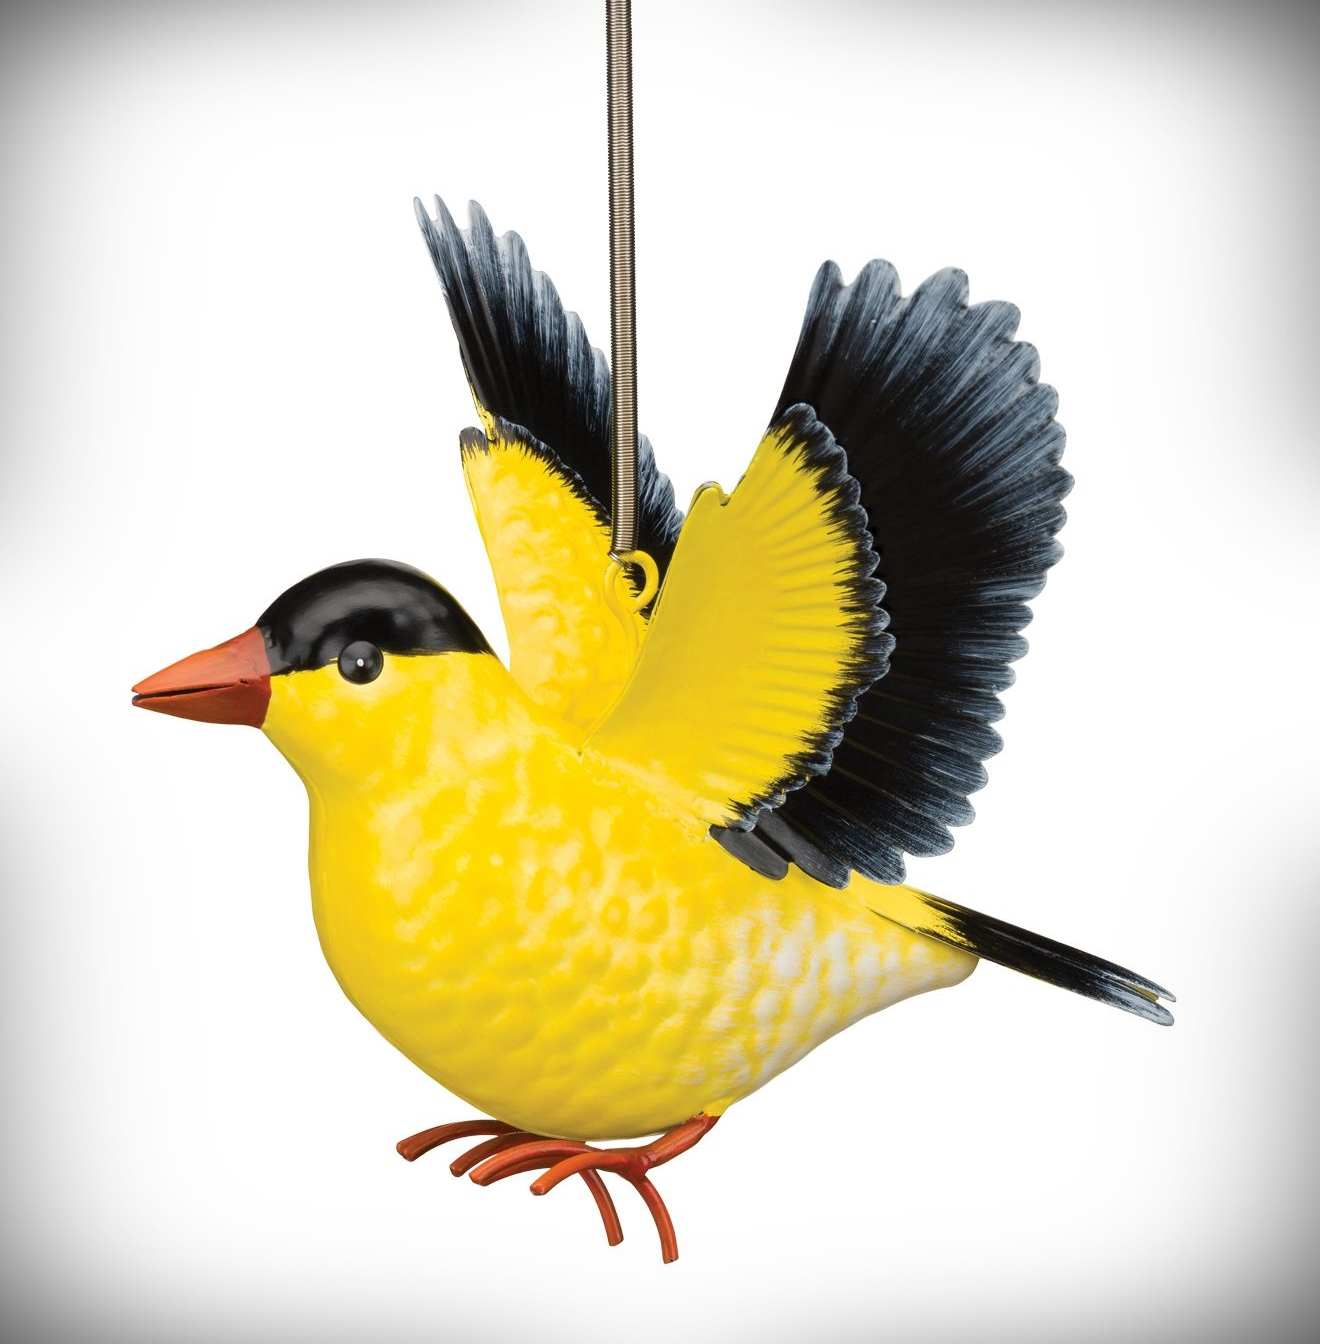 Goldfinch on Twig Metal Tin British Garden Bird Animal Statue Ornament Figurine